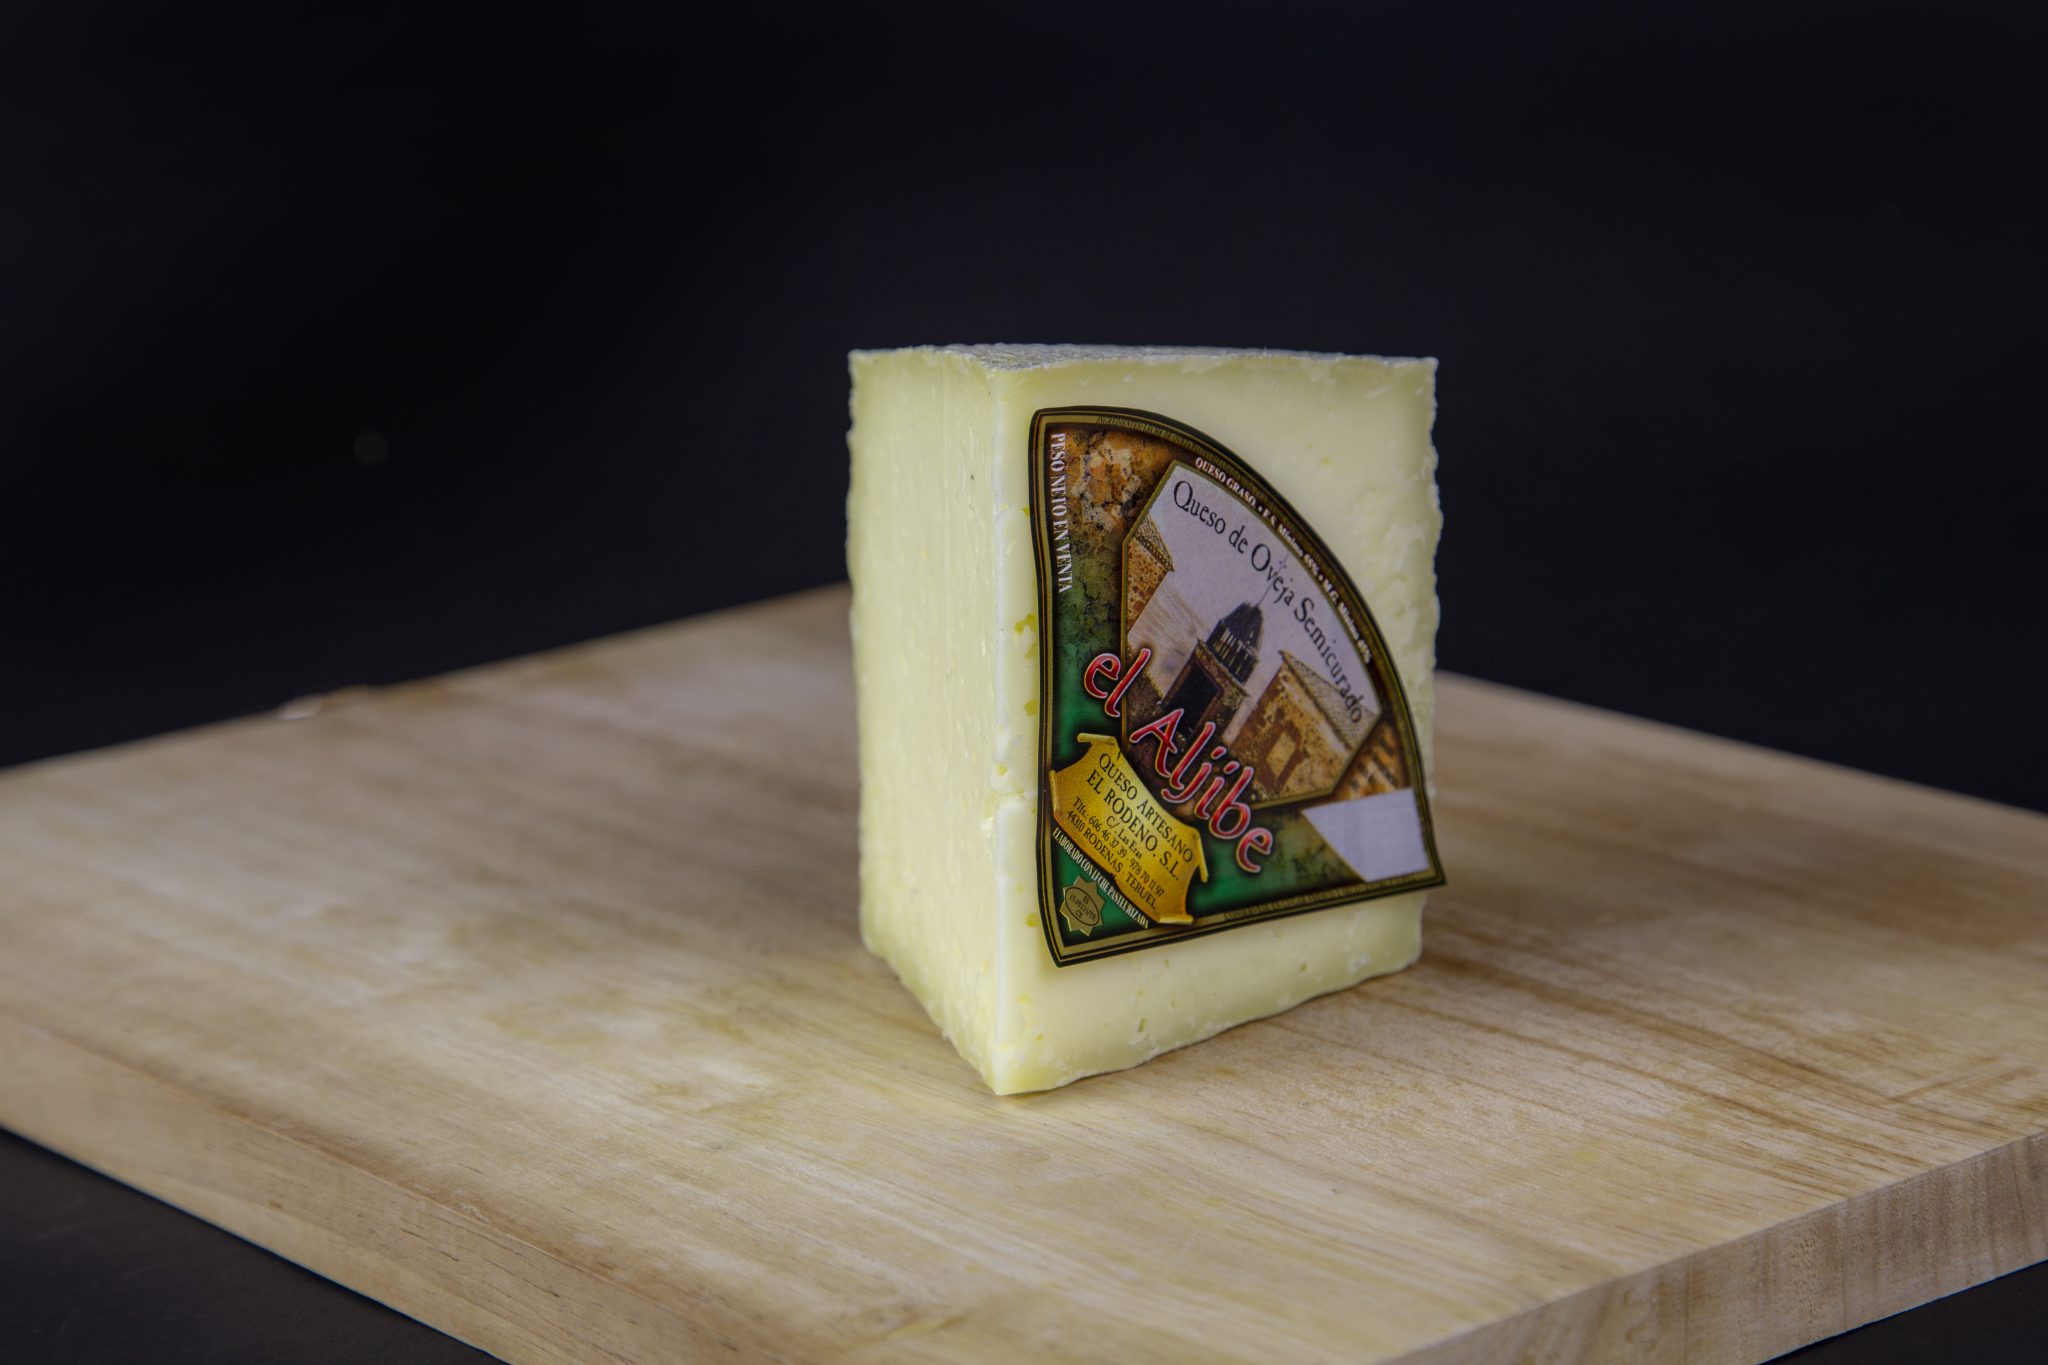 Semi-cured cheese wedge